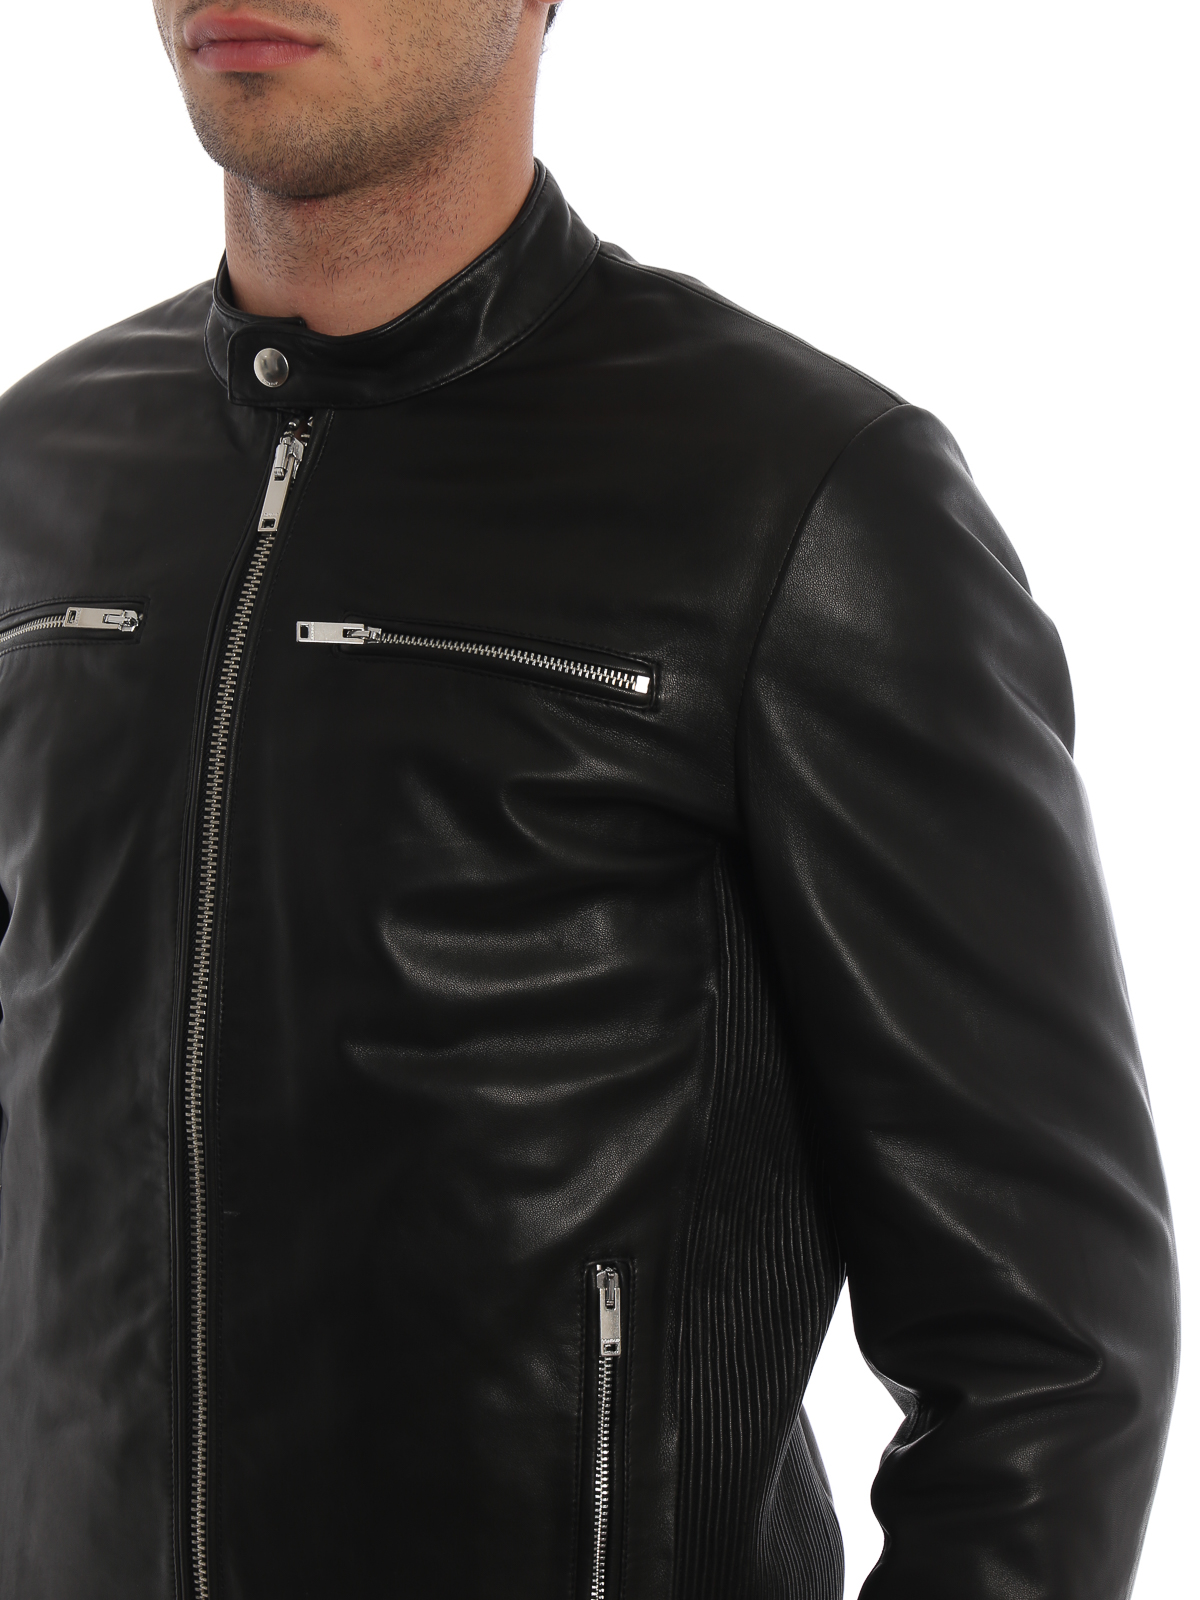 Leather jacket Dondup - Four pocket leather biker jacket ...